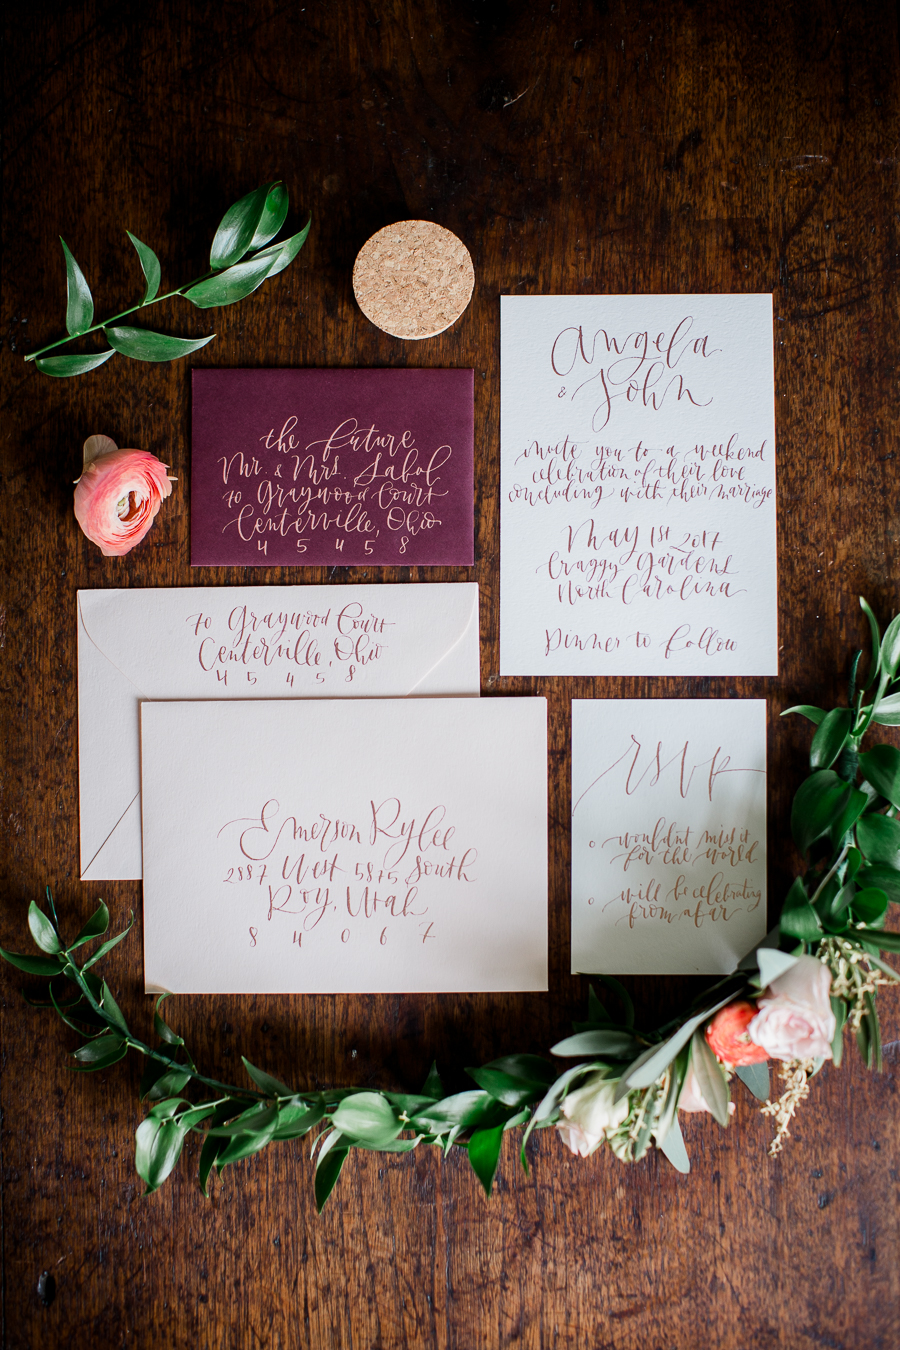 Invitations at this North Carolina Elopement by Knoxville Wedding Photographer, Amanda May Photos.